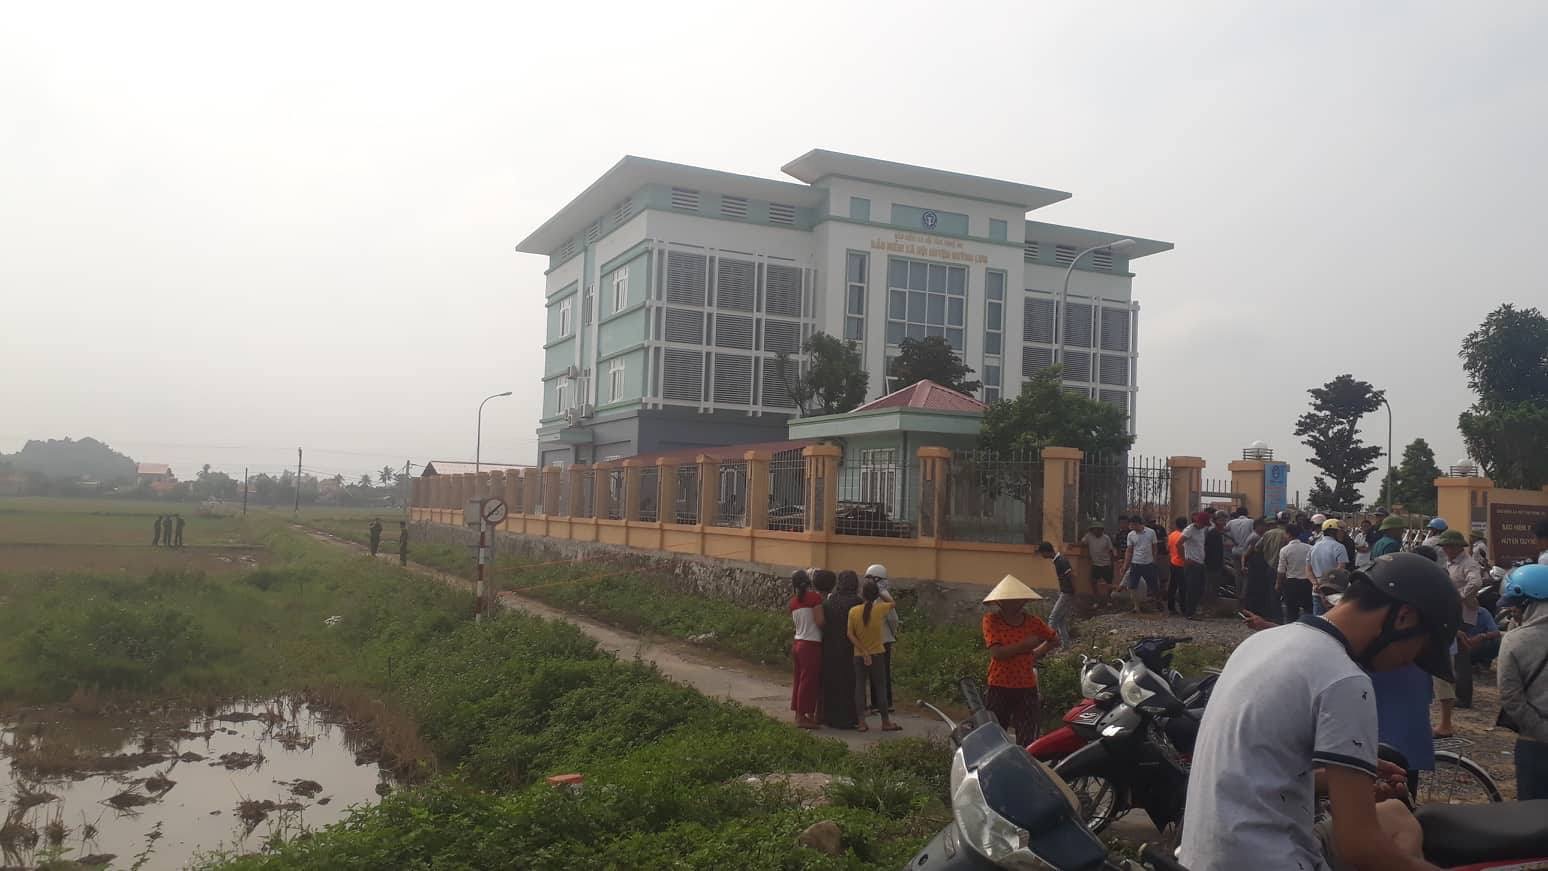 Khu vực Bảo hiểm xã hội huyện Quỳnh Lưu nơi phát hiện thi thể ông Thành